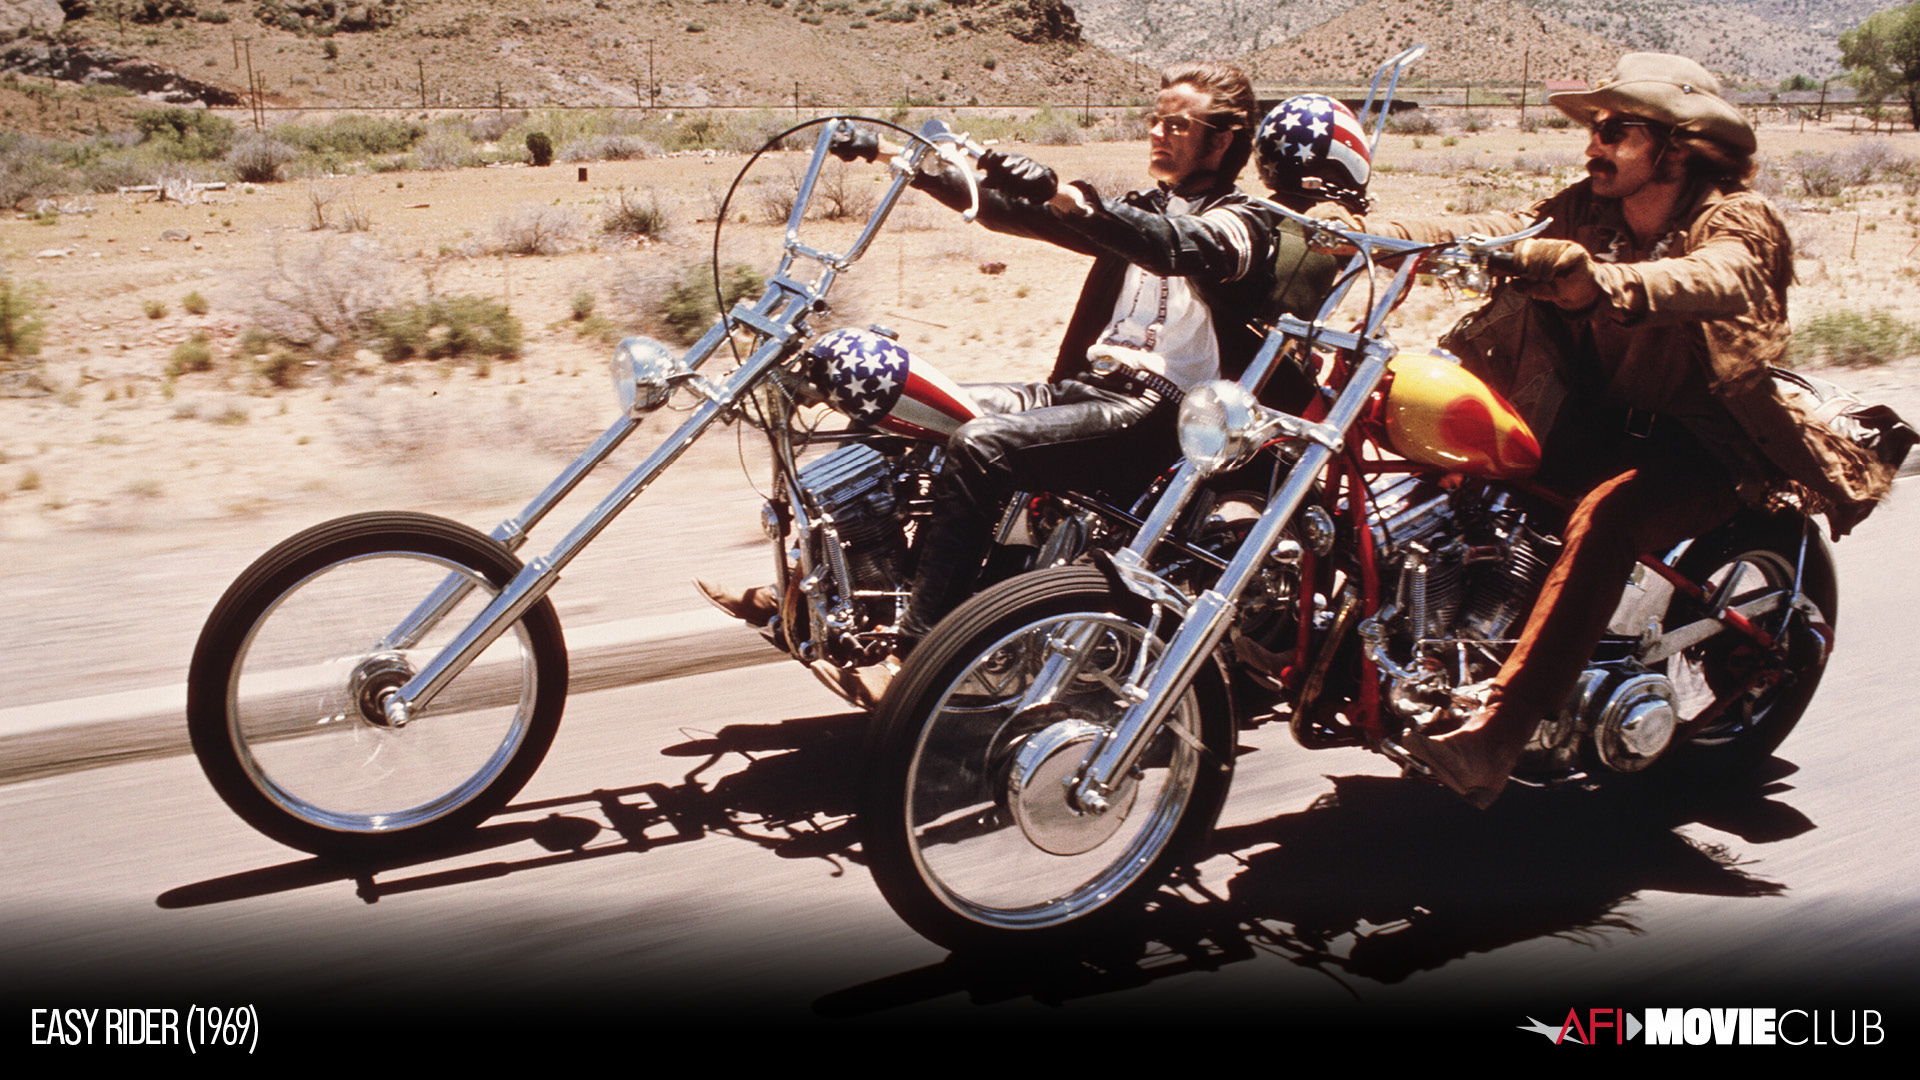 Easy Rider Film Still - Dennis Hopper and Peter Fonda